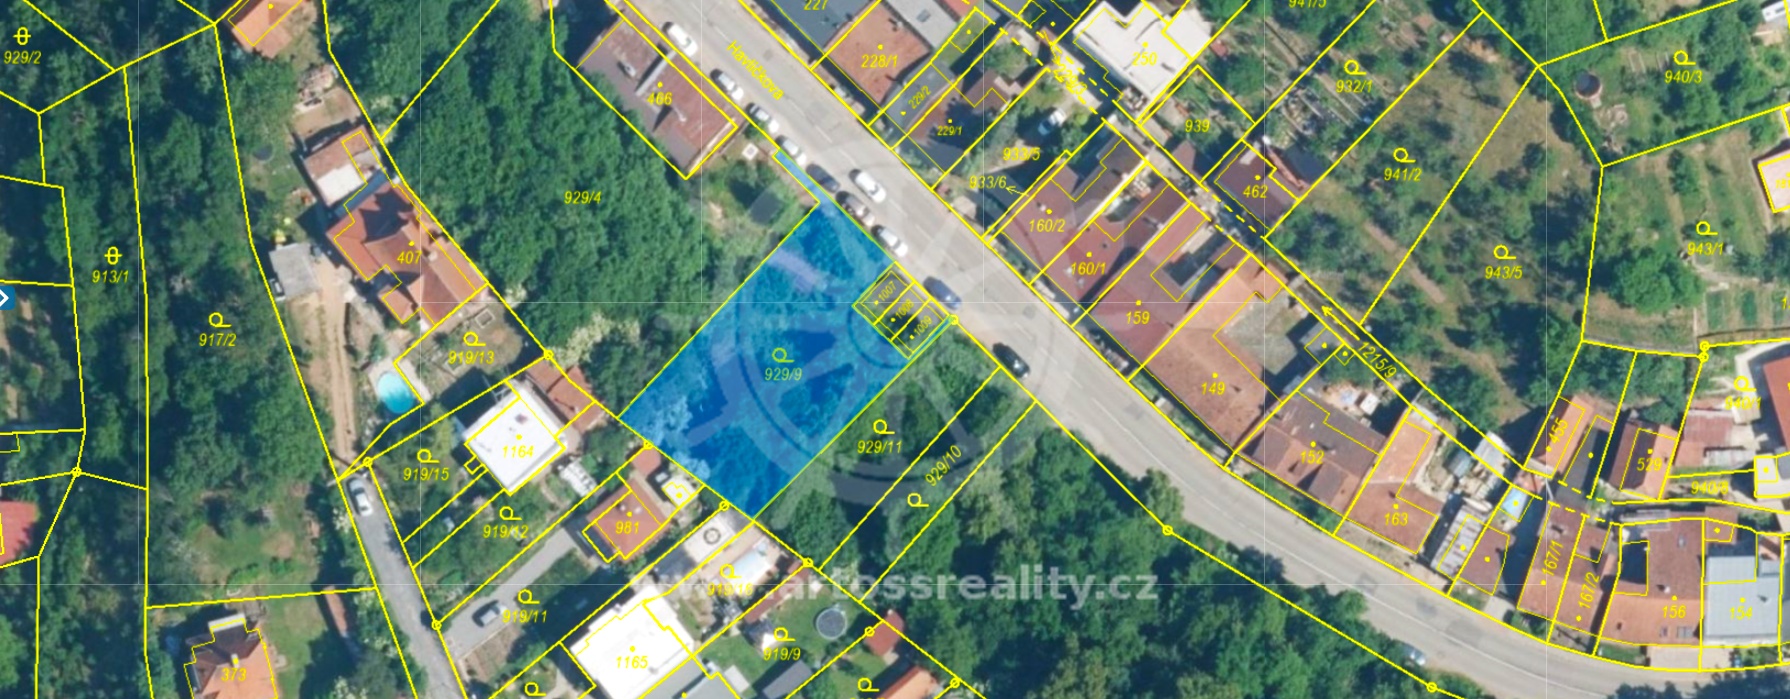 Prodej zahrady - investičního pozemku 761 m2 - Bílovice nad Svitavou, okres Brno - venkov